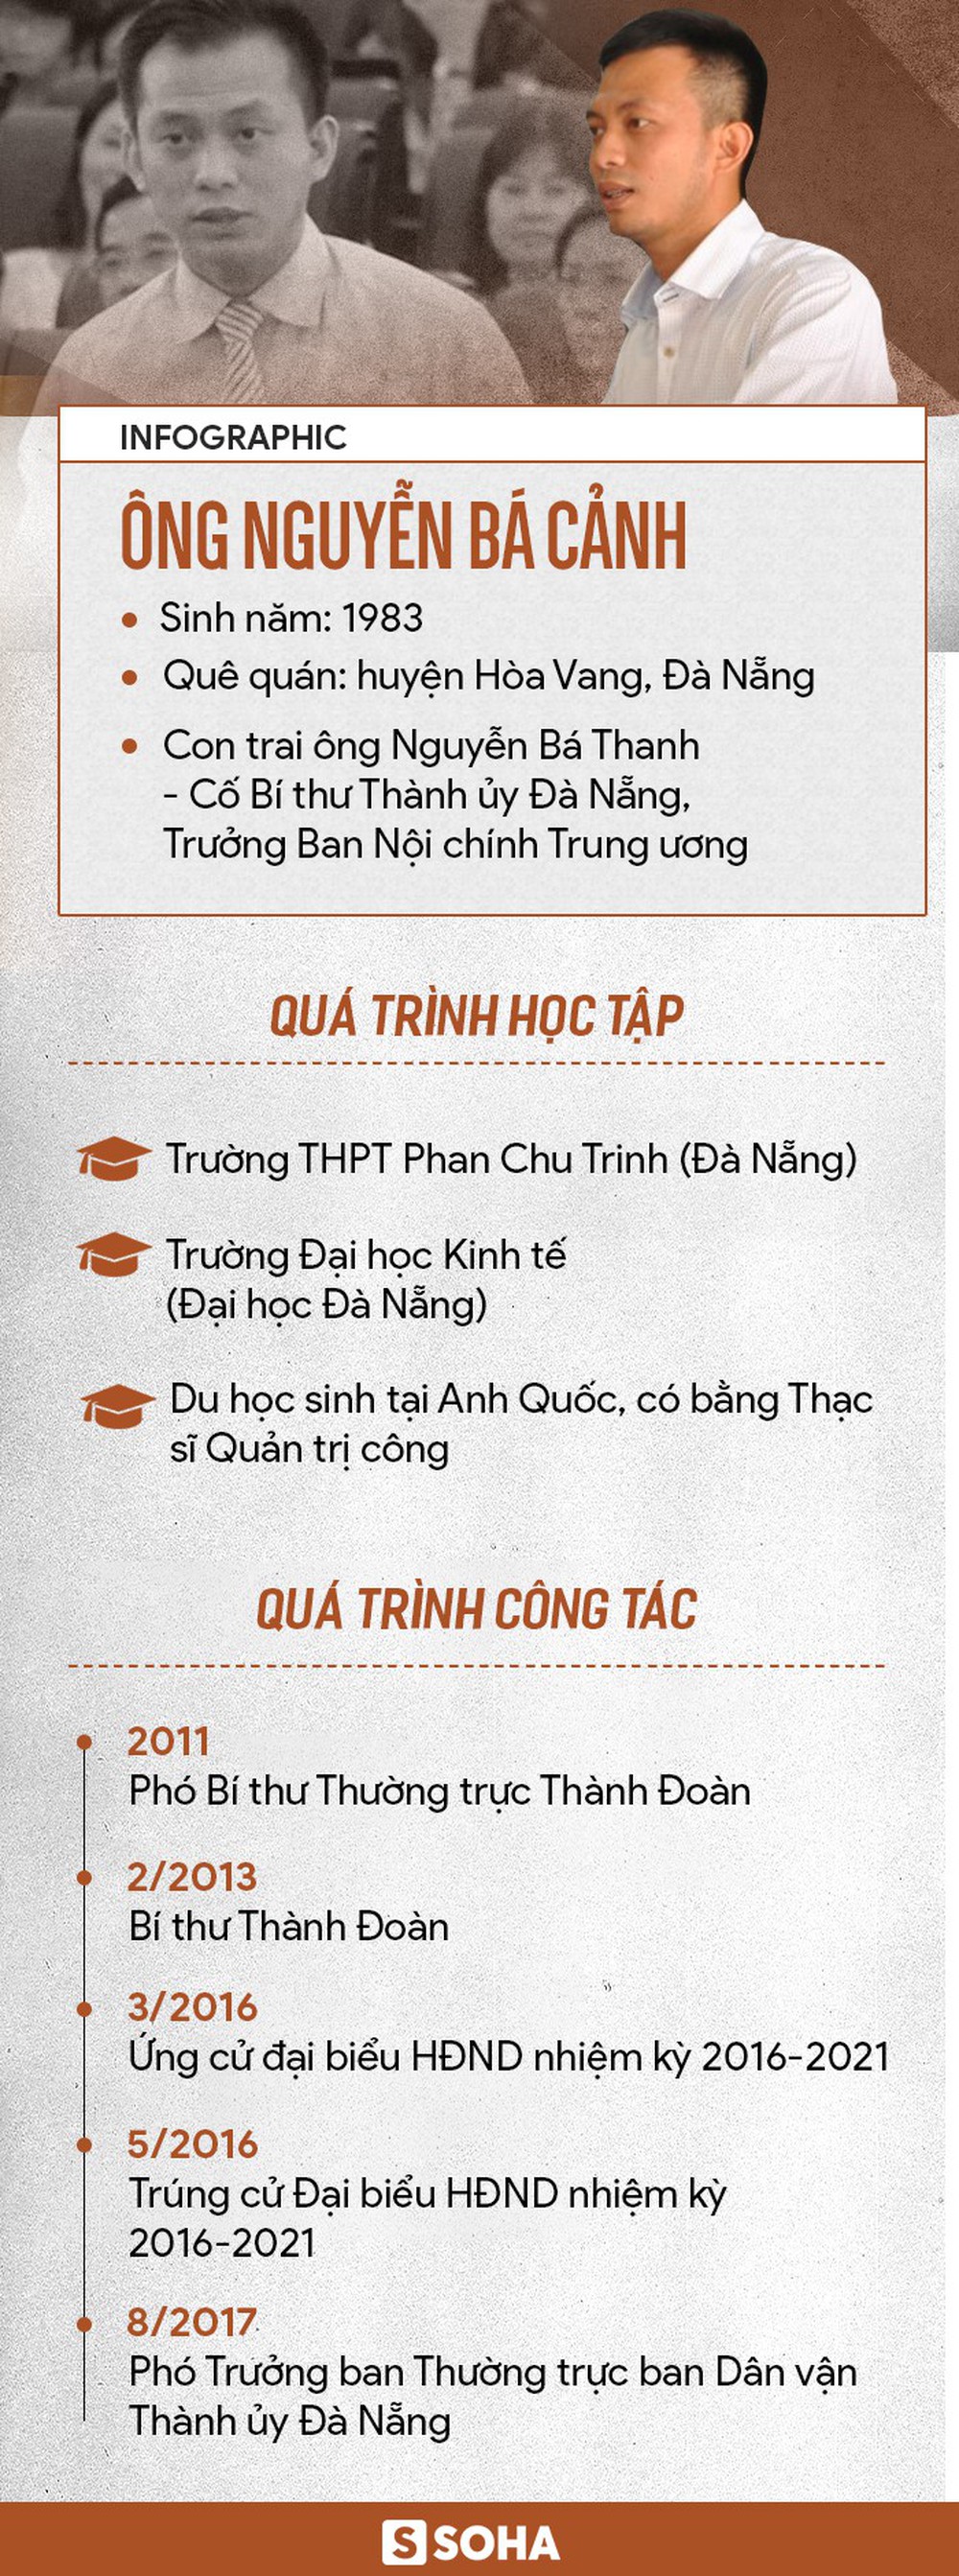 Thành ủy Đà Nẵng tán thành kỷ luật cách hết chức vụ trong Đảng đối với ông Nguyễn Bá Cảnh - Ảnh 3.